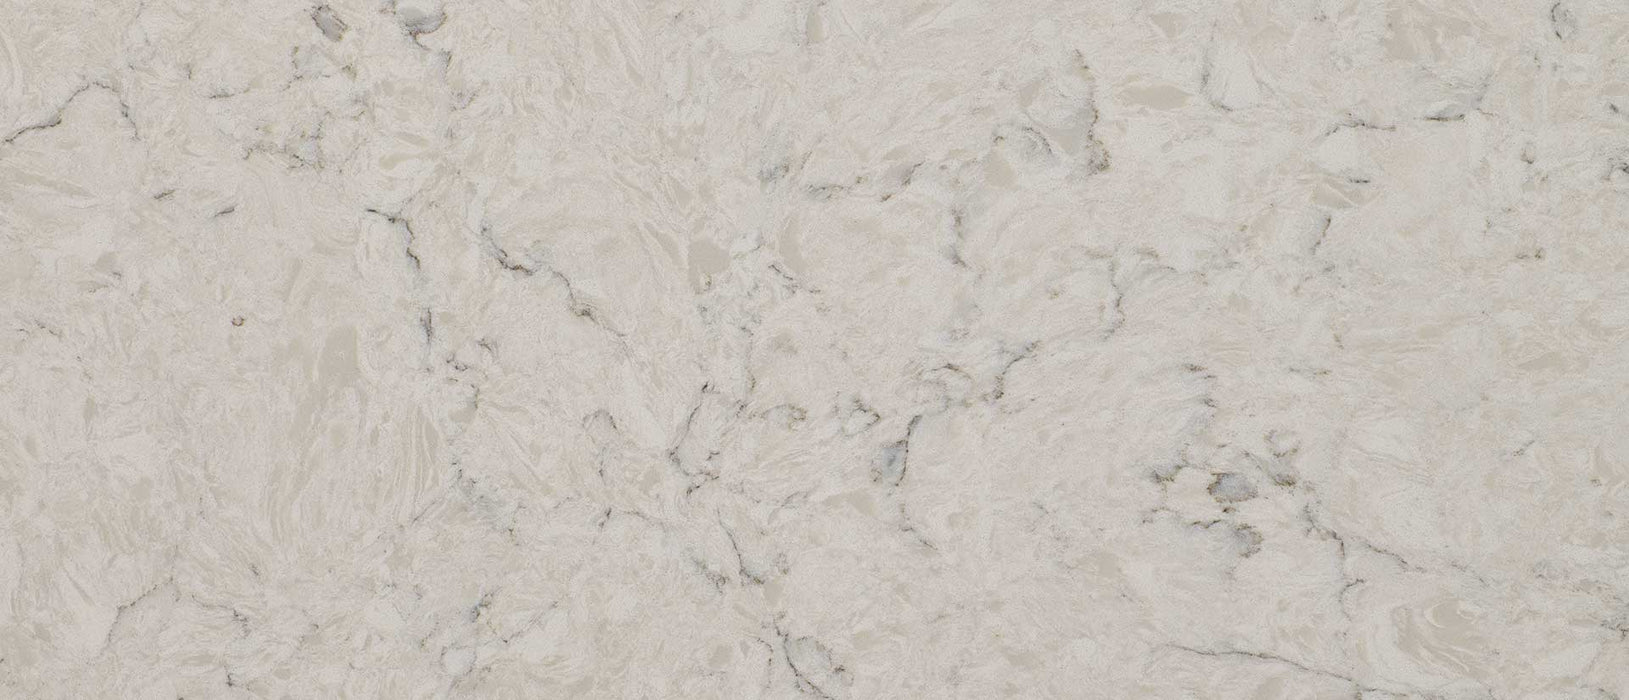 Carrara Mist quartz countertop close up